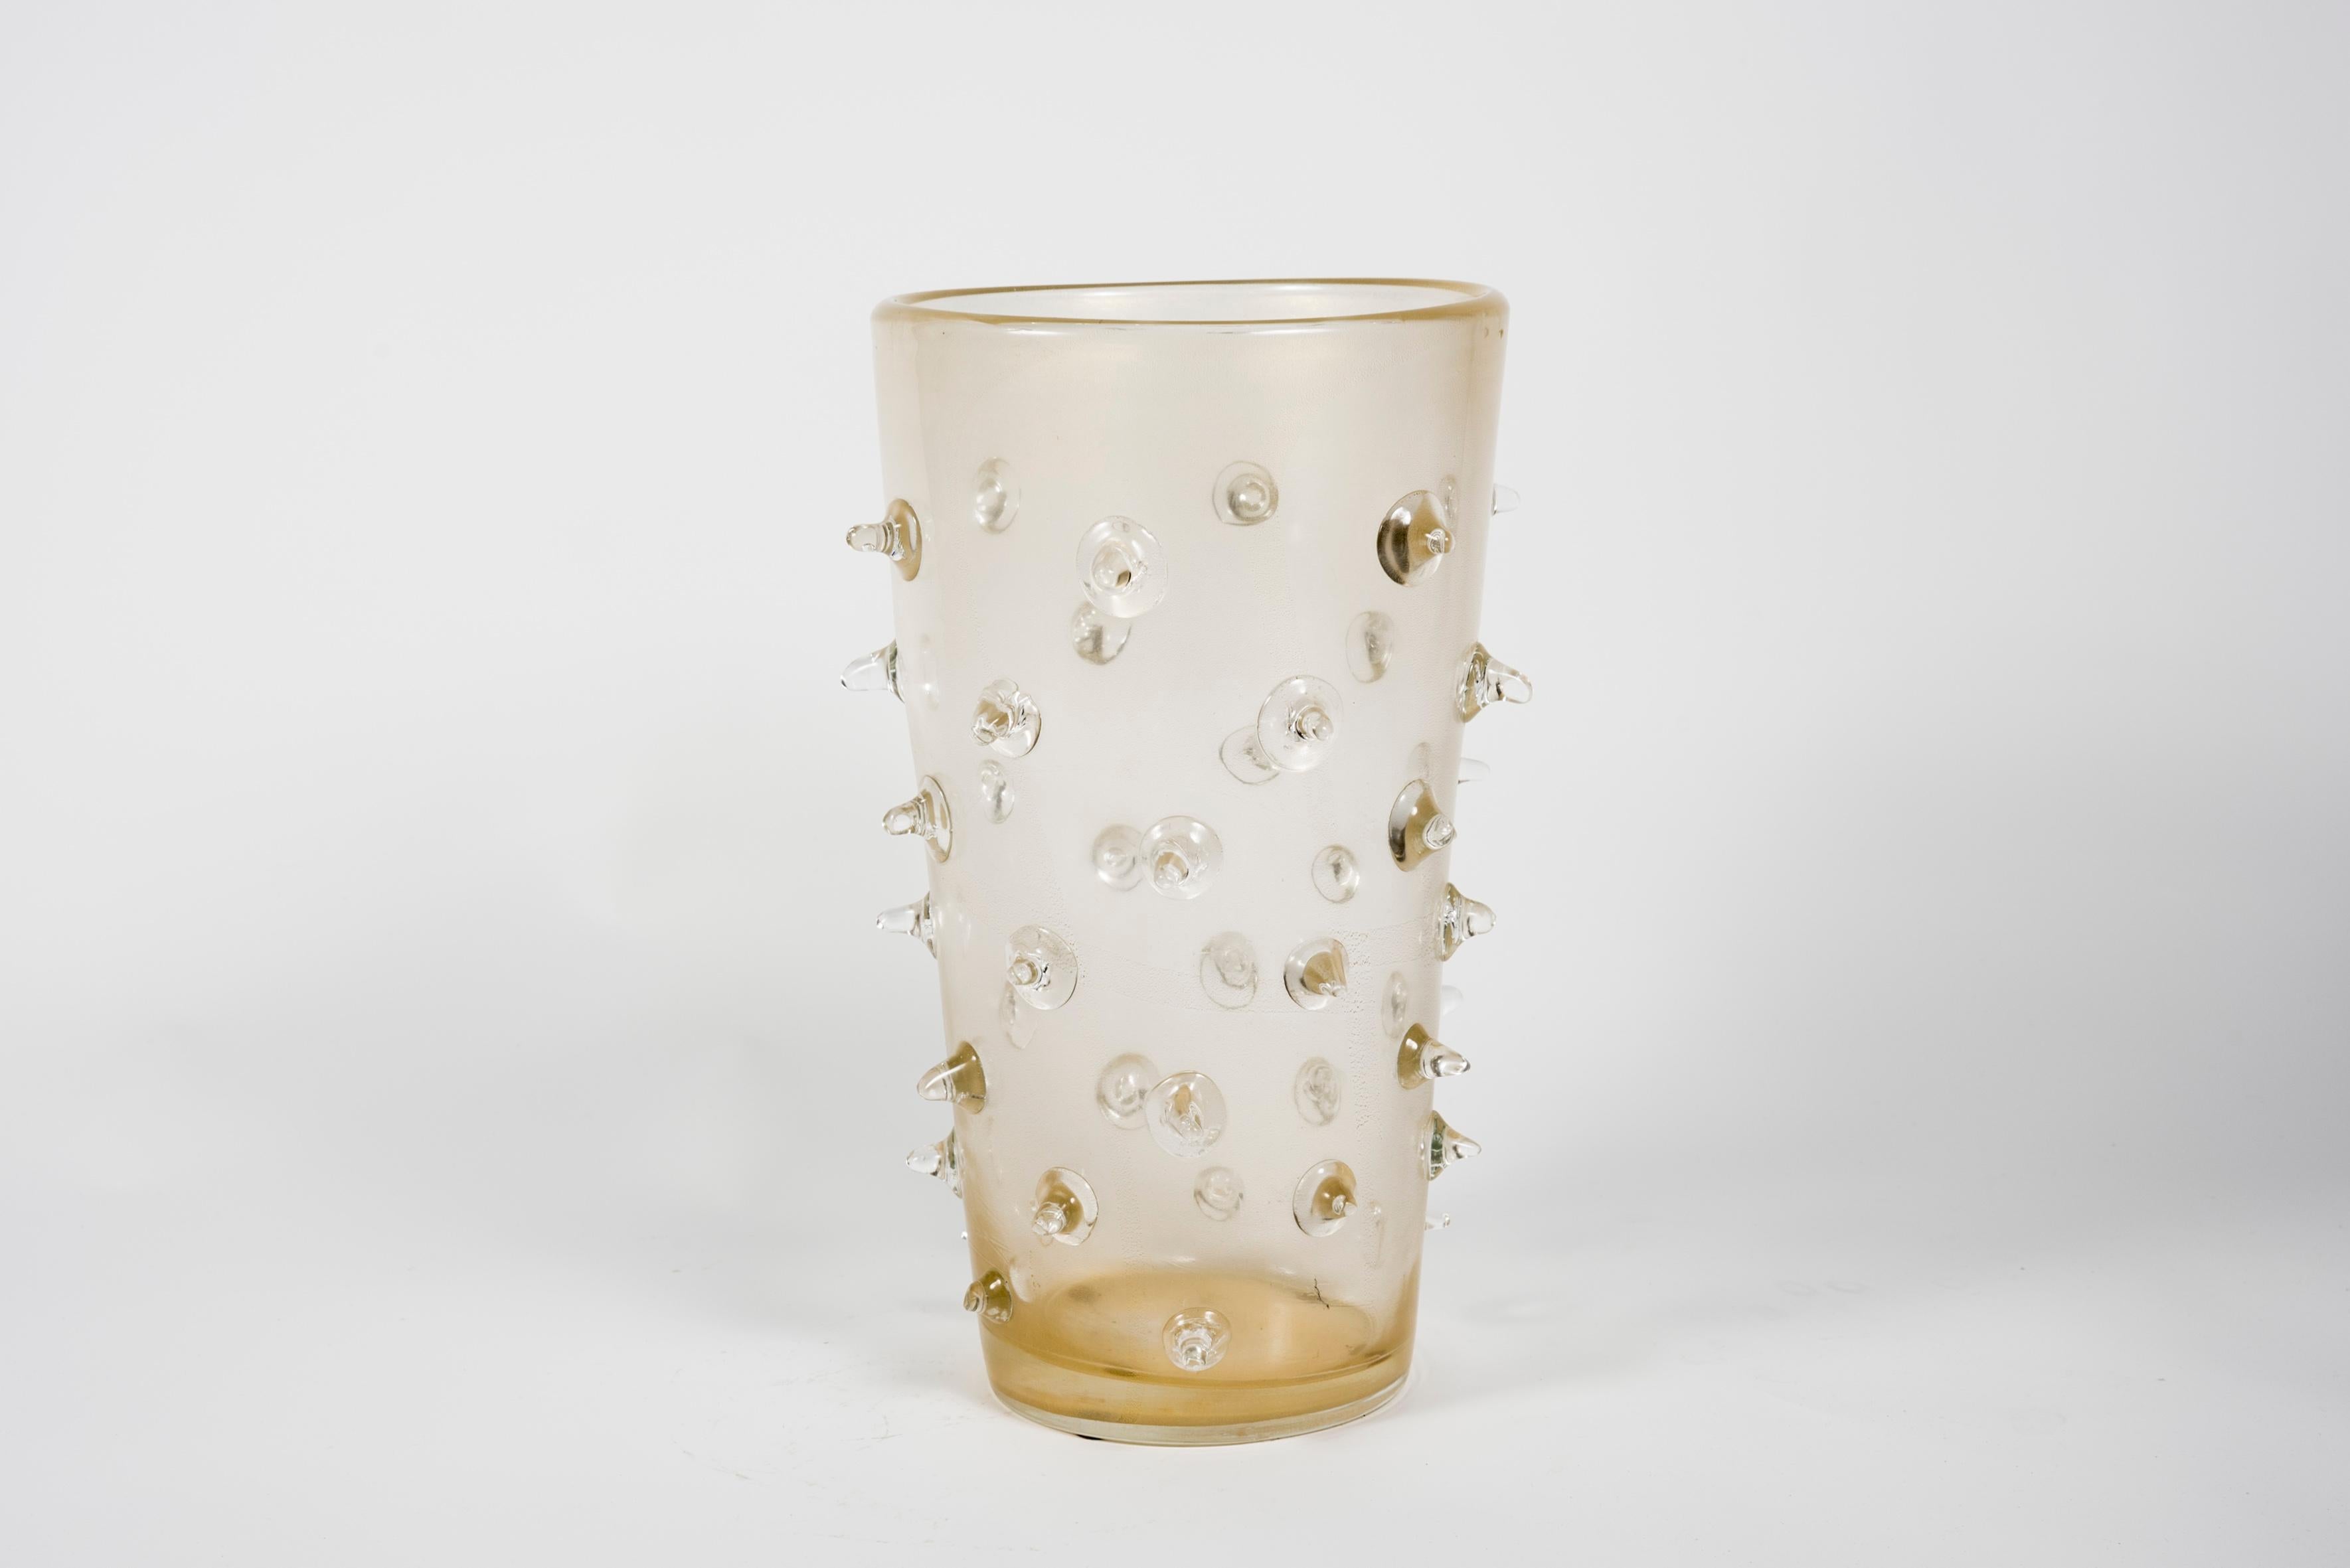 Sehr schöne Vasen aus Murano-Glas.
Unterzeichnet
 